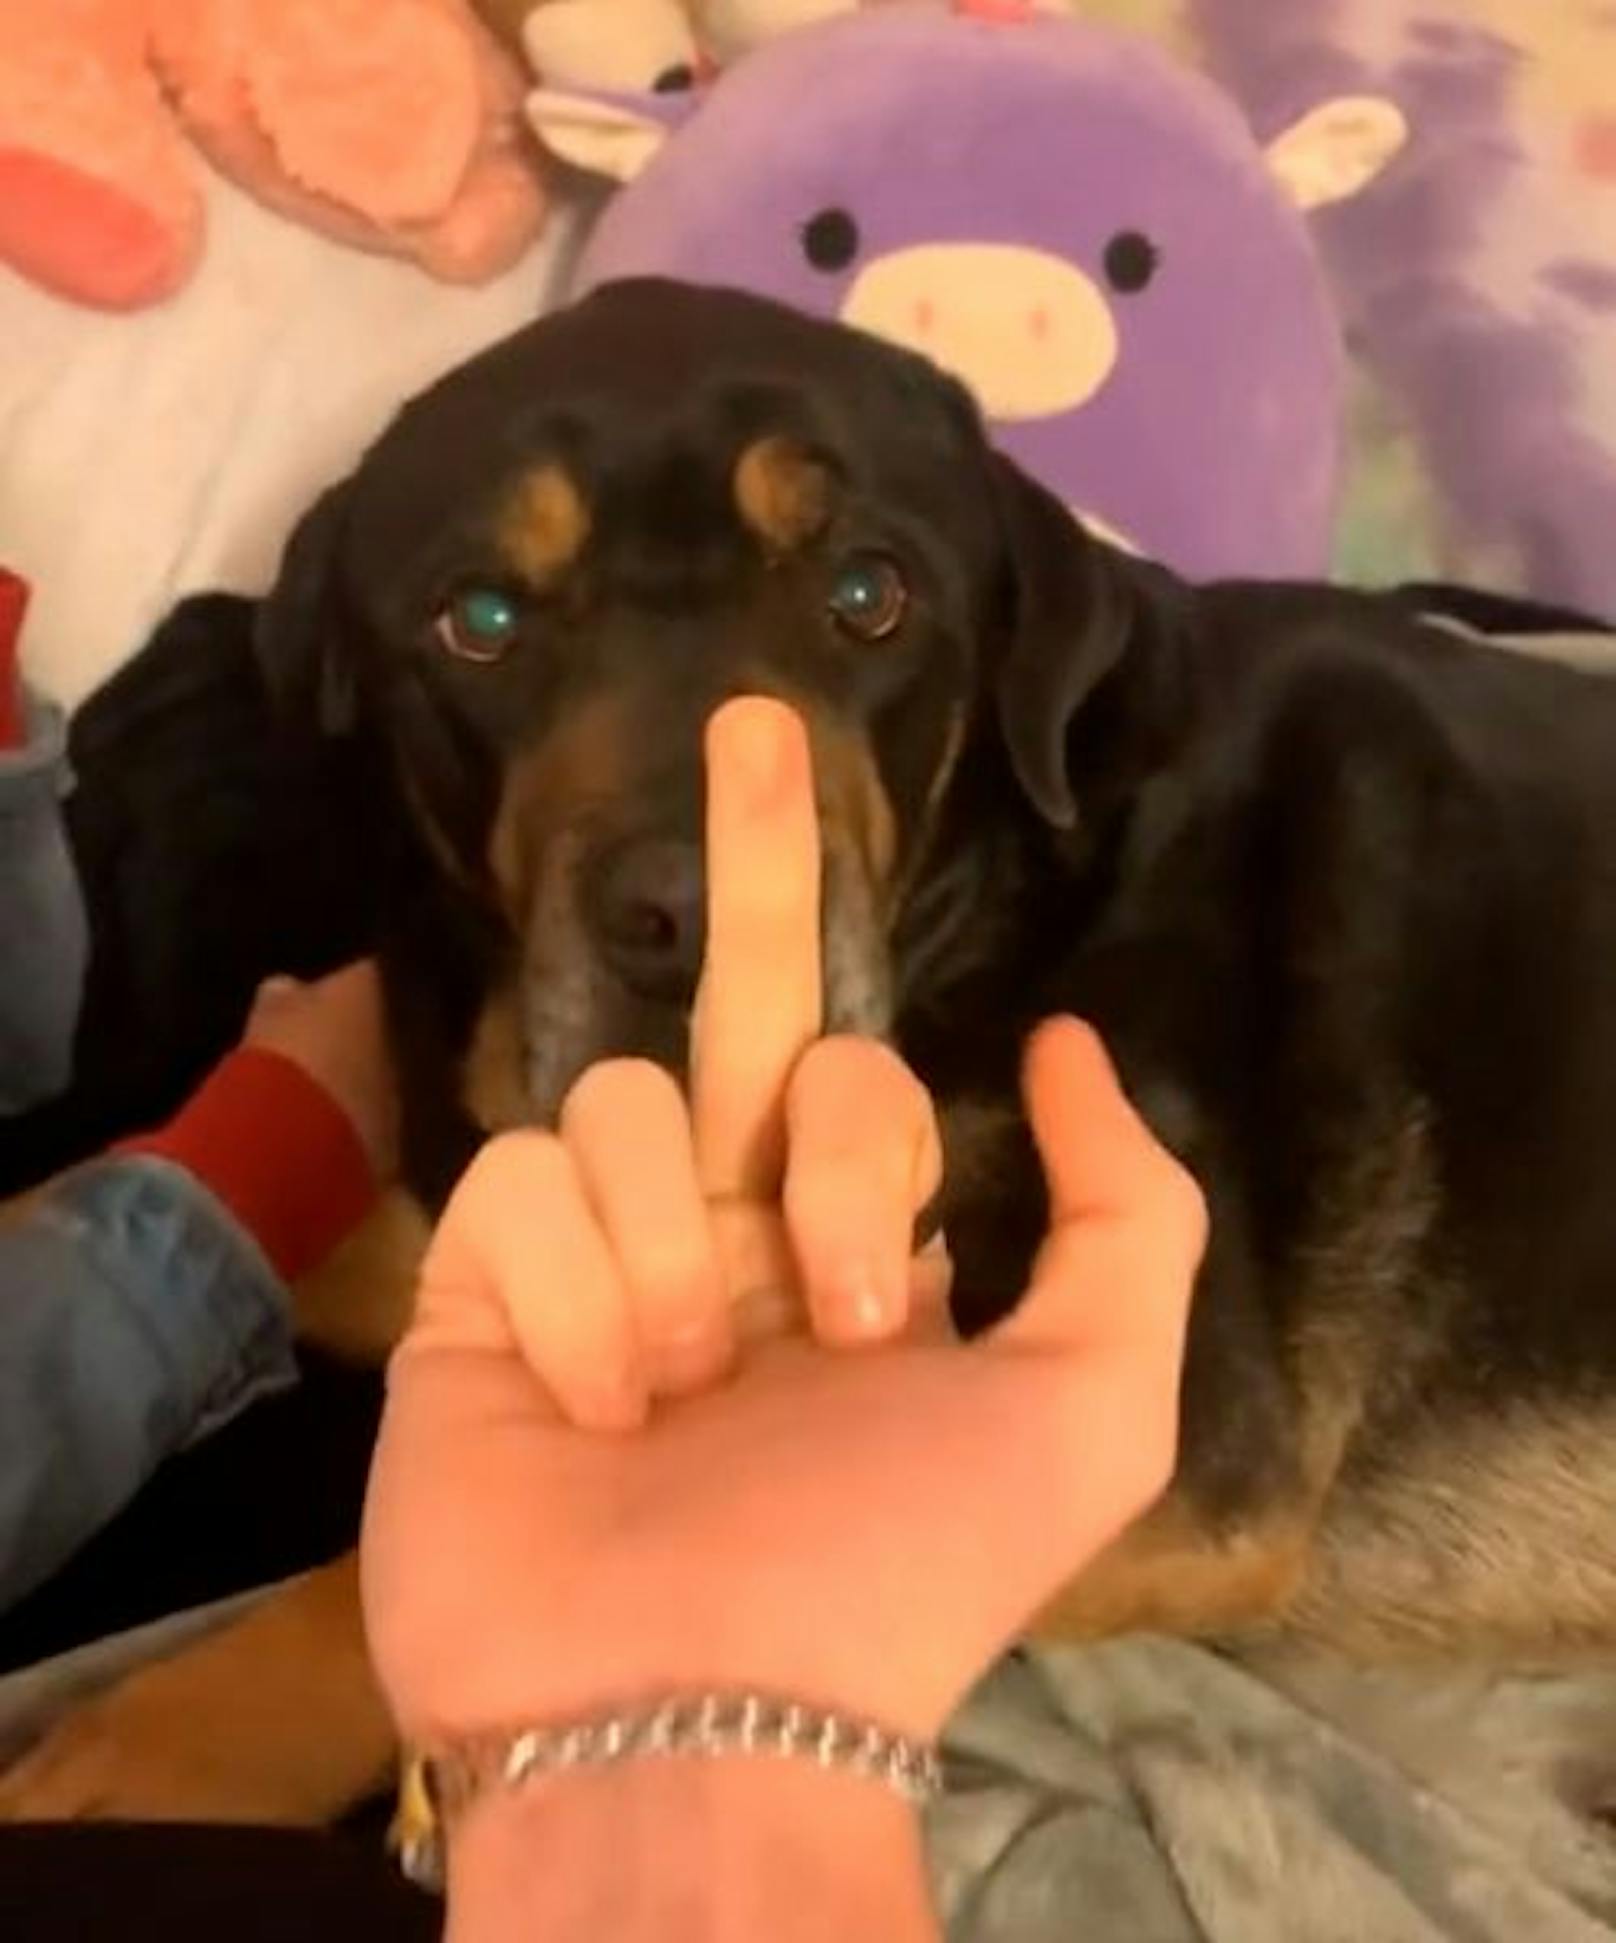 Mann zeigt Hund Stinkefinger, erlebt böse Überraschung